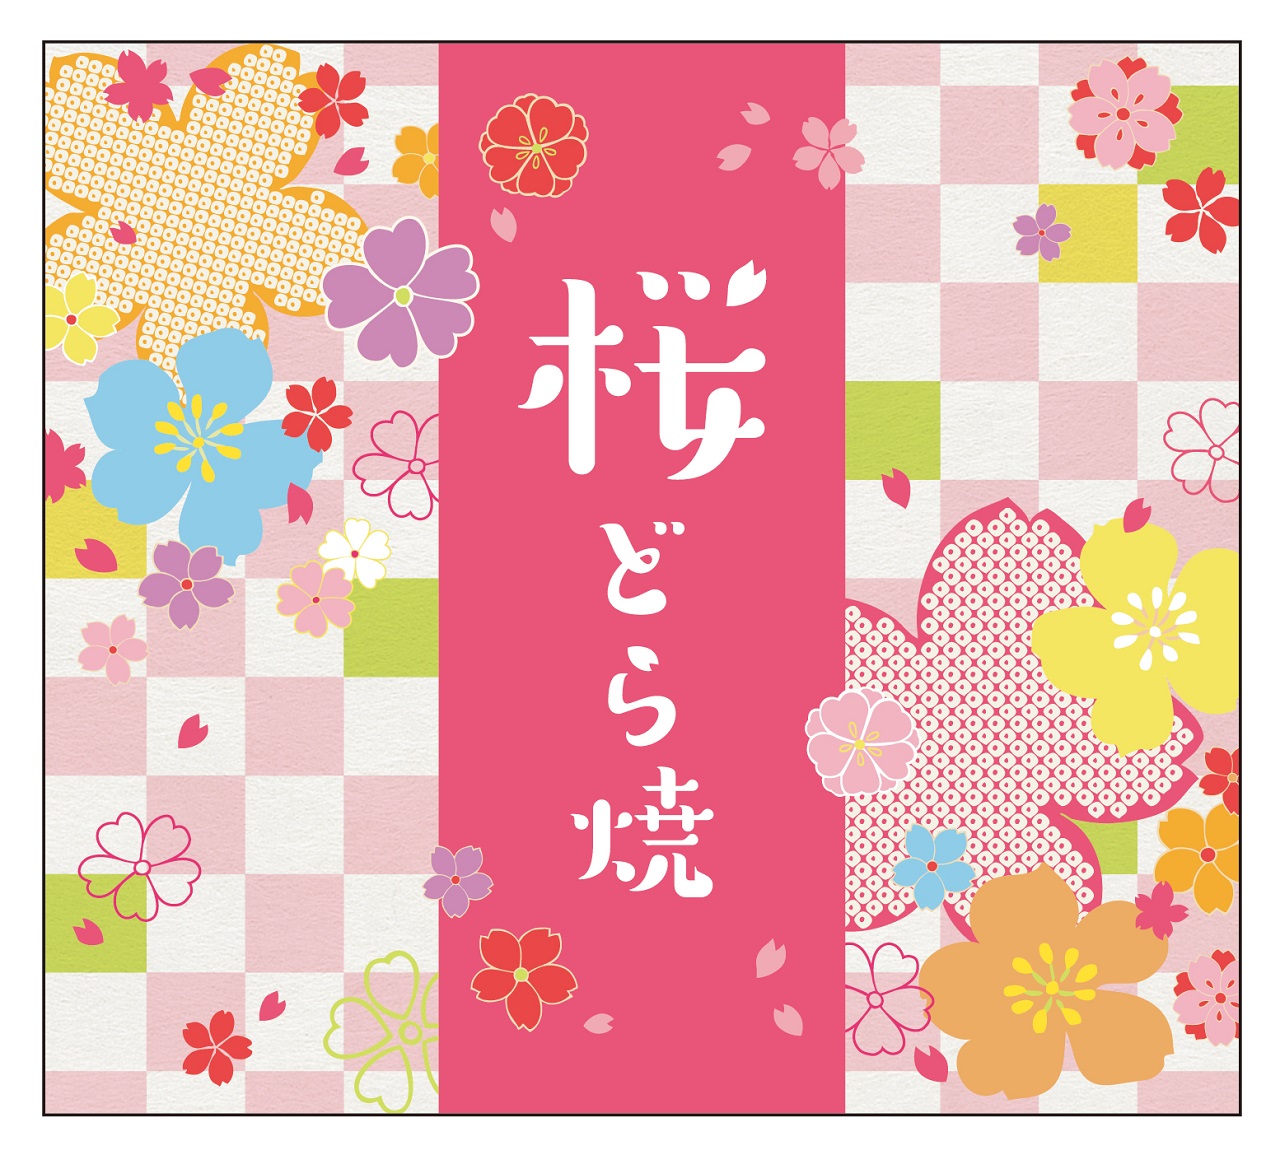 桜の風味と淡いピンクの色合いが春の訪れを告げる、季節限定「桜どら焼」発売